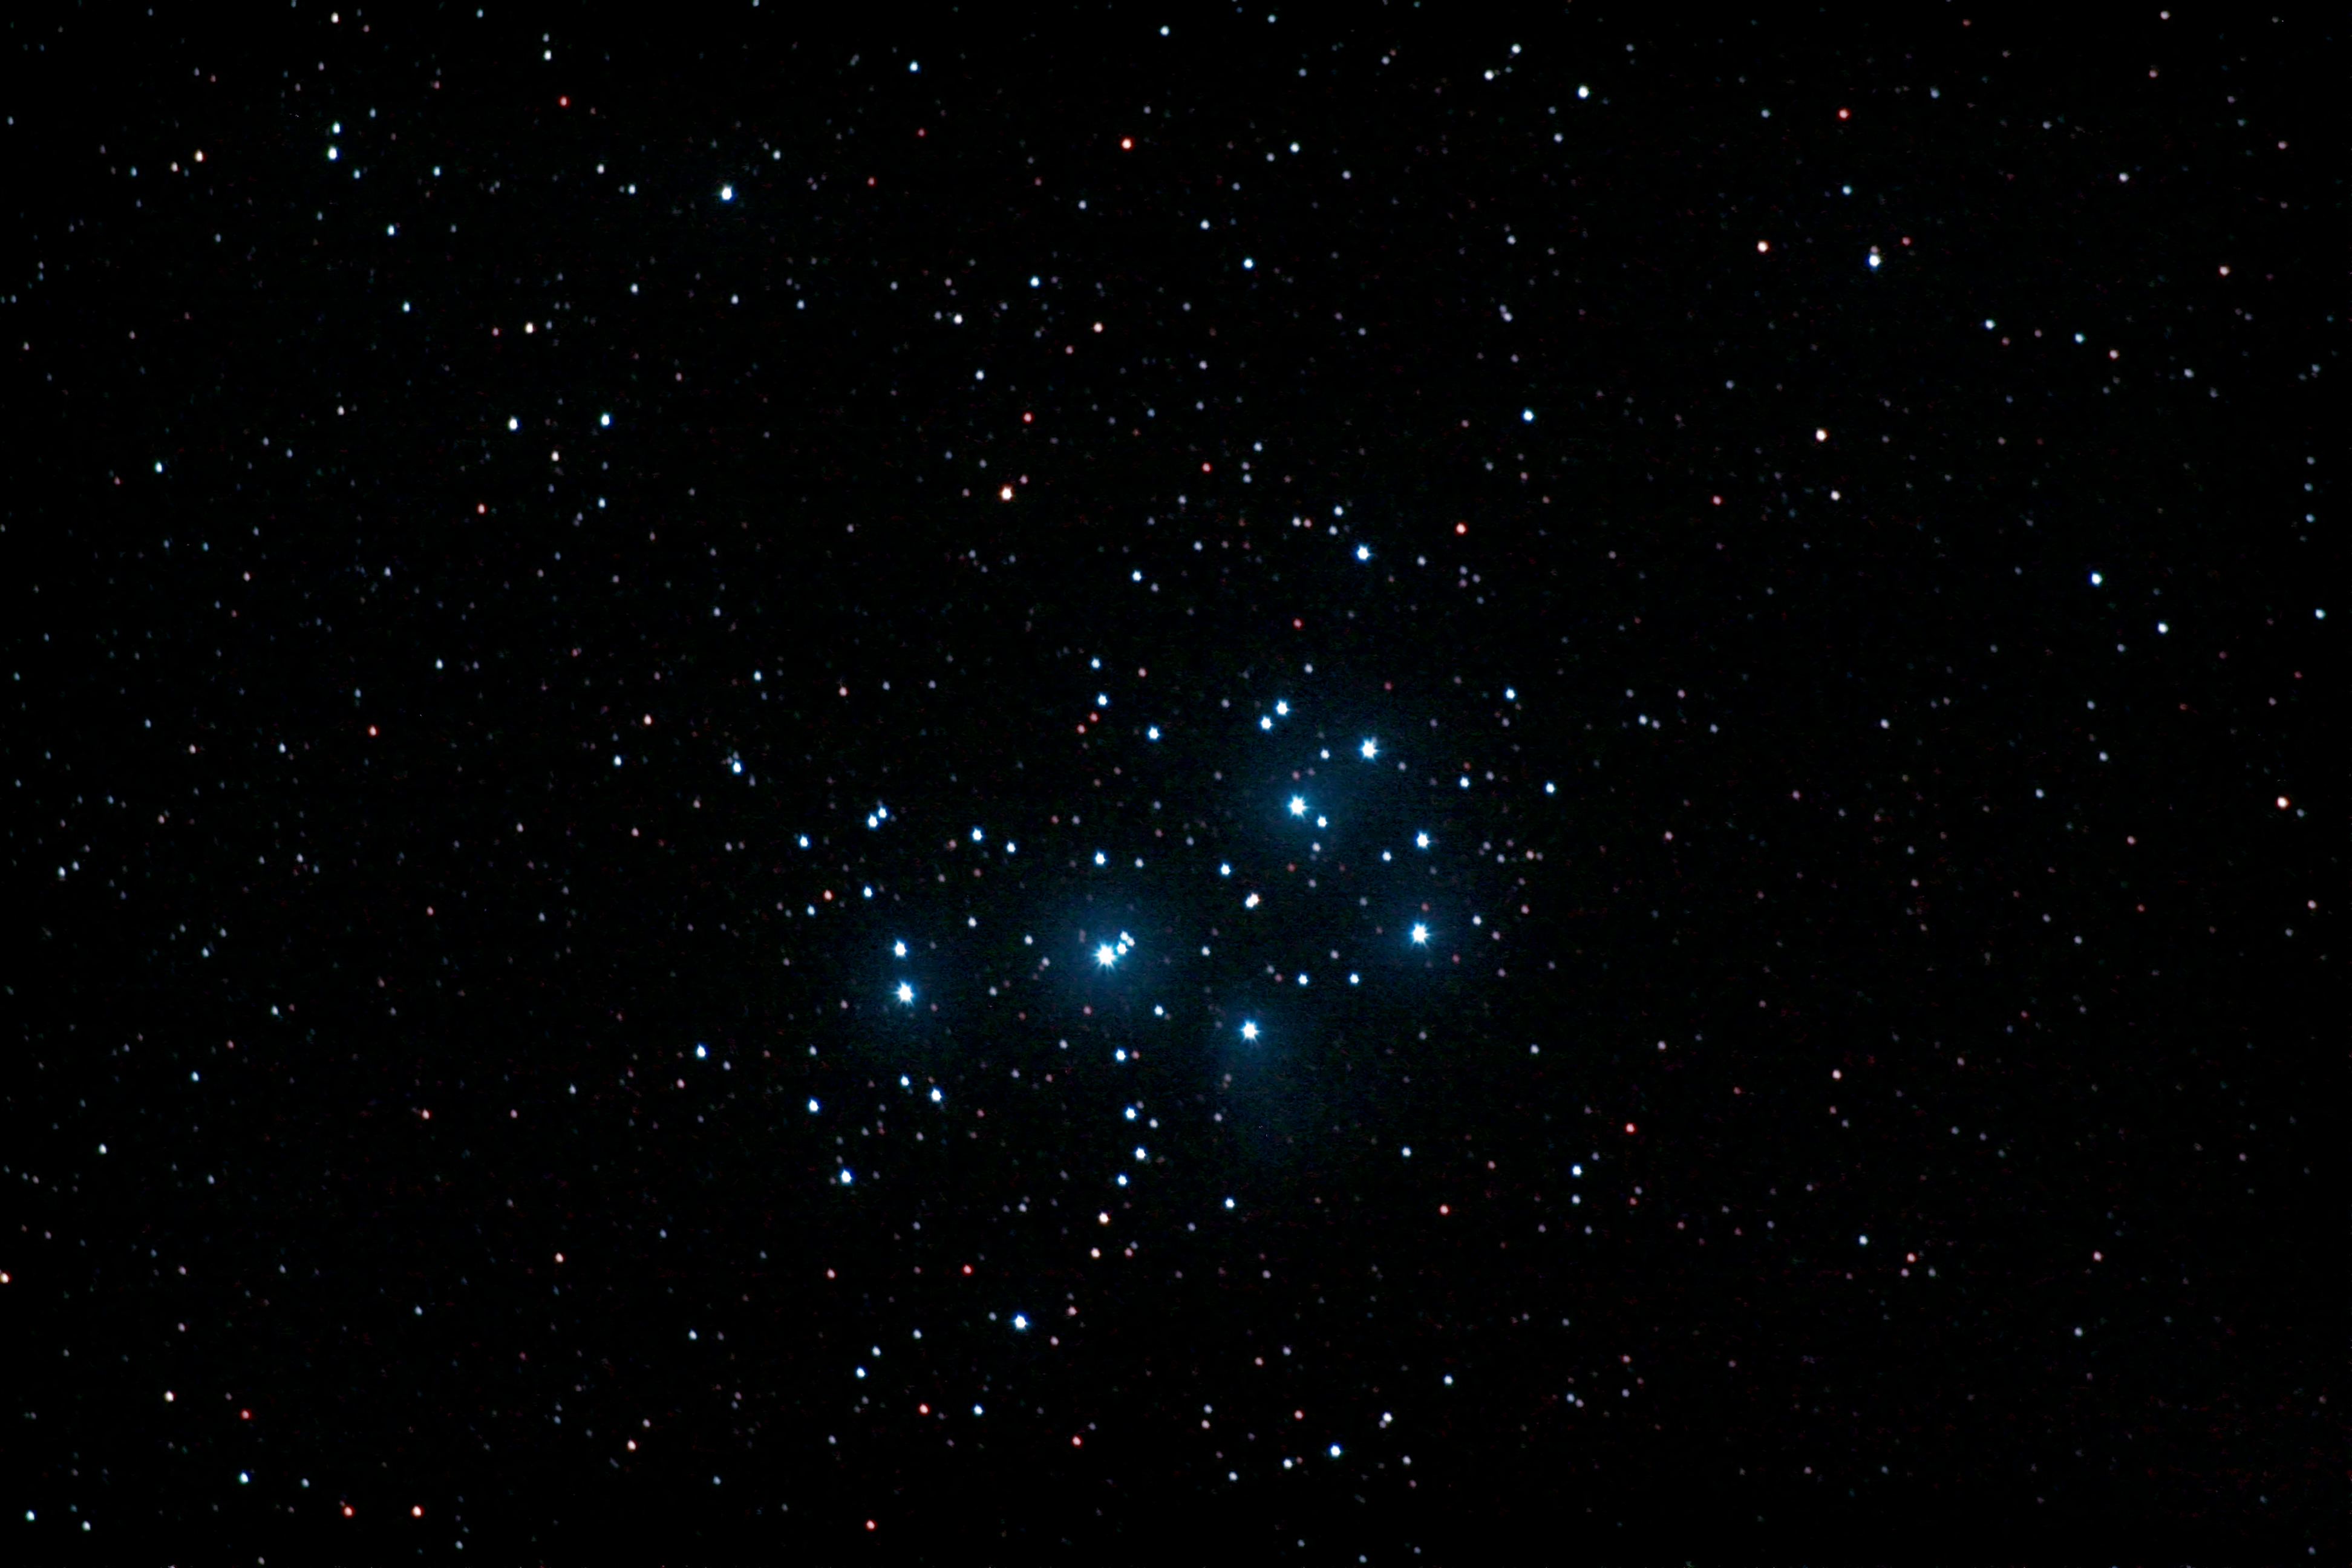 Offener Sternhaufen M45